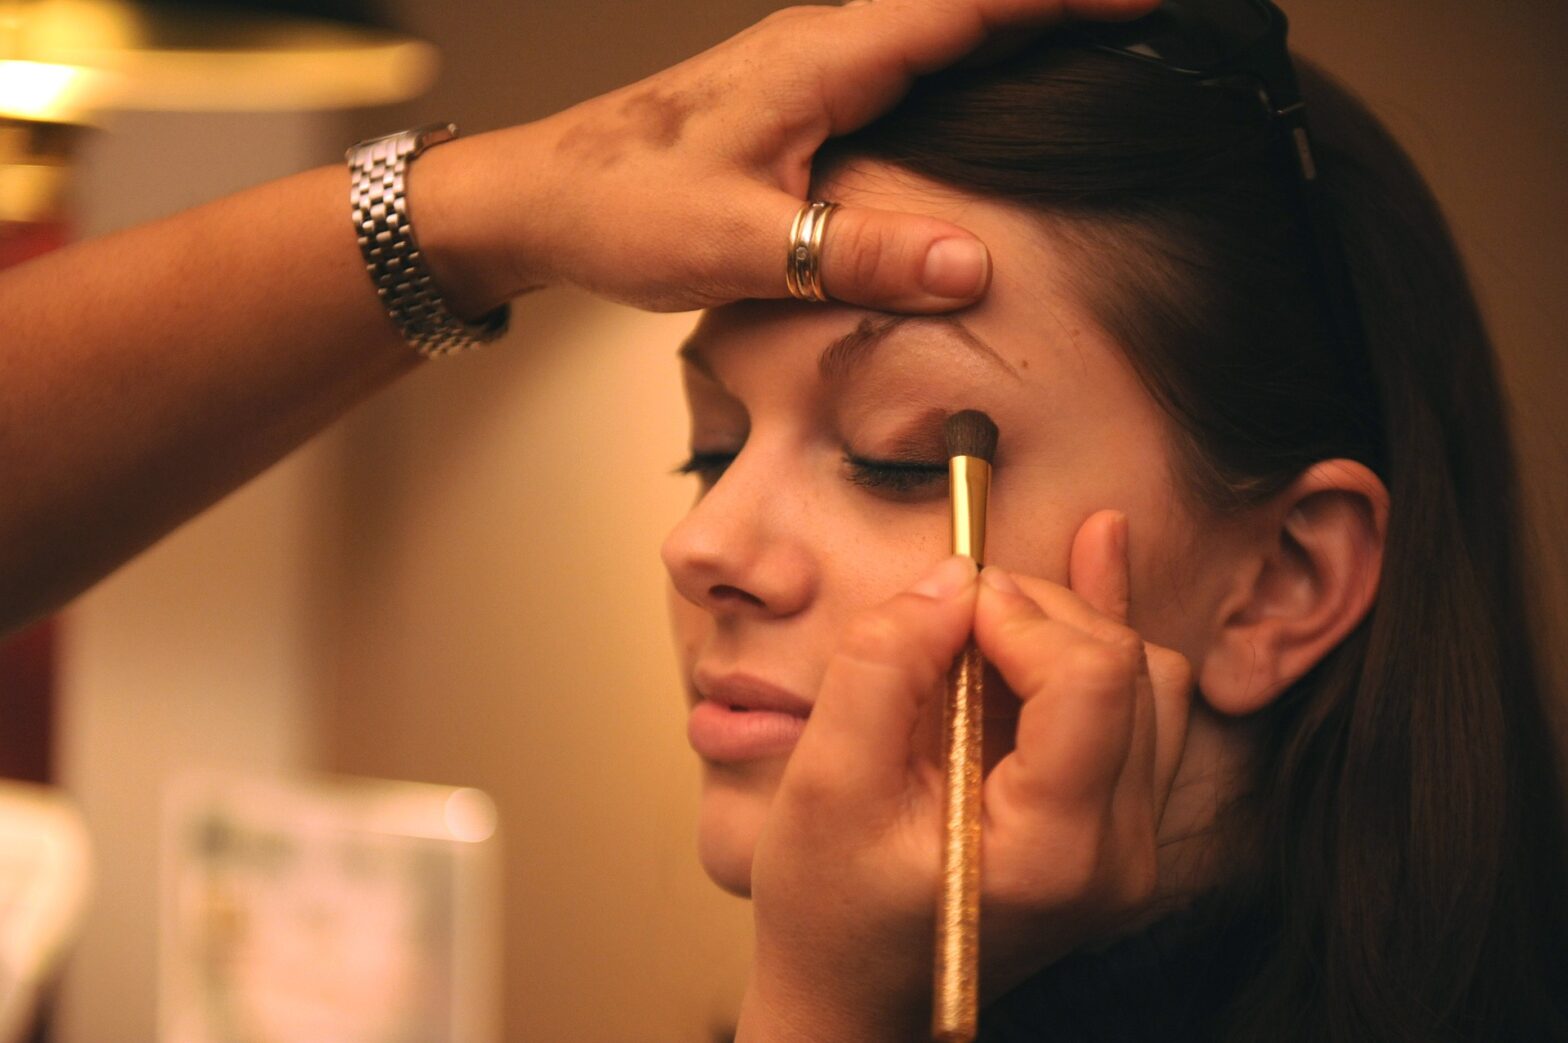 celebrity makeup artist